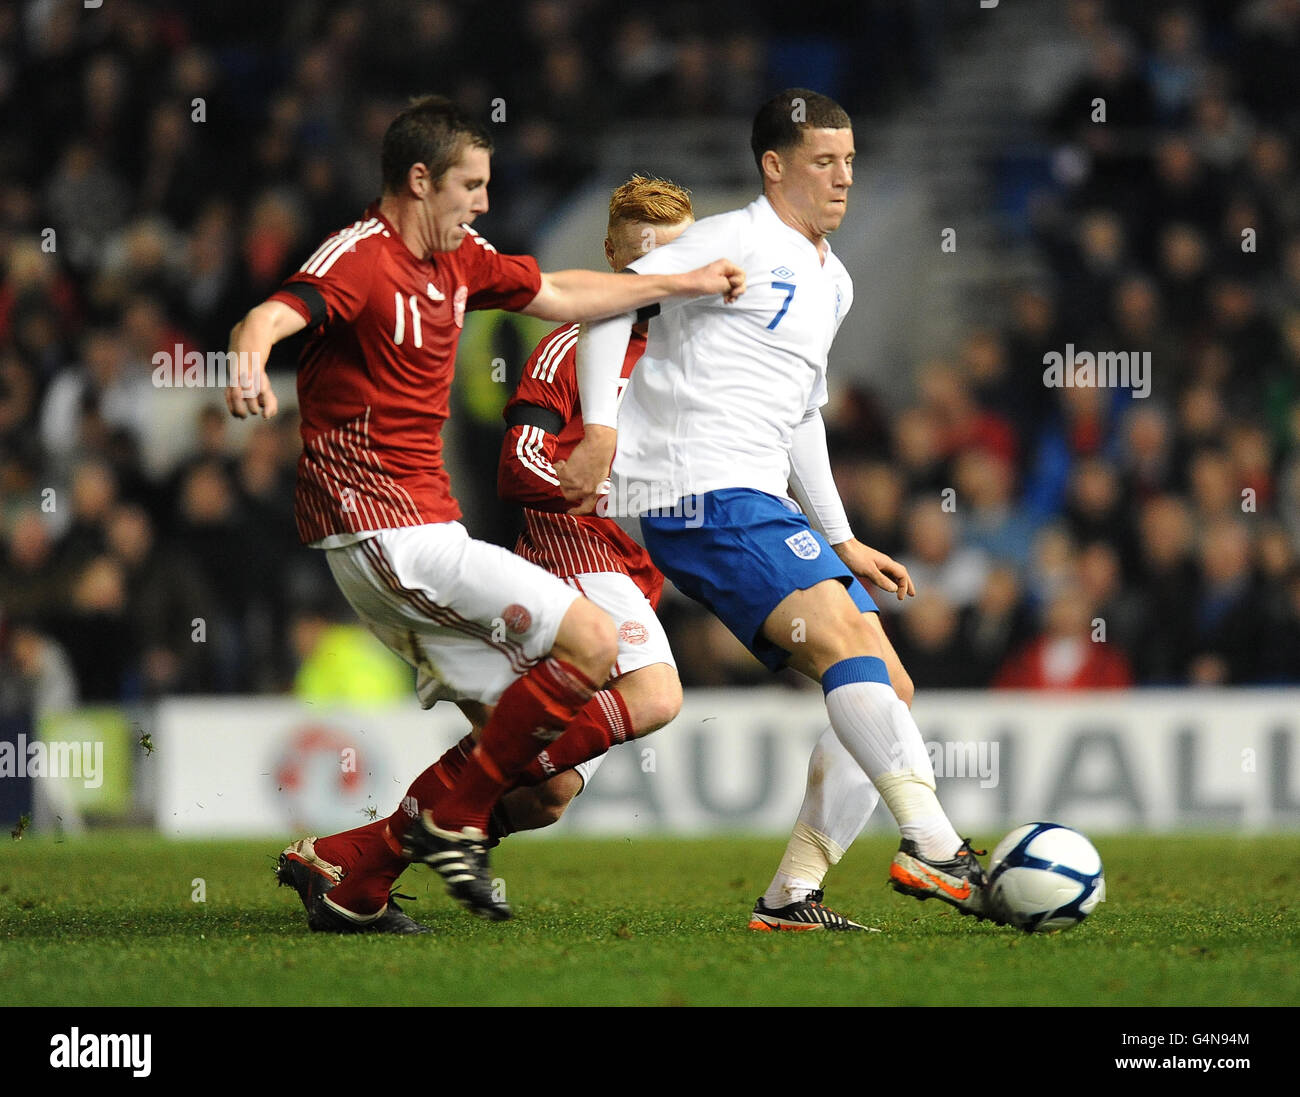 Soccer - Under 19 International Friendly - England v Denmark - AMEX Stadium. England's Ross Barkley and Denmark's Lukas Lerager (left) Stock Photo